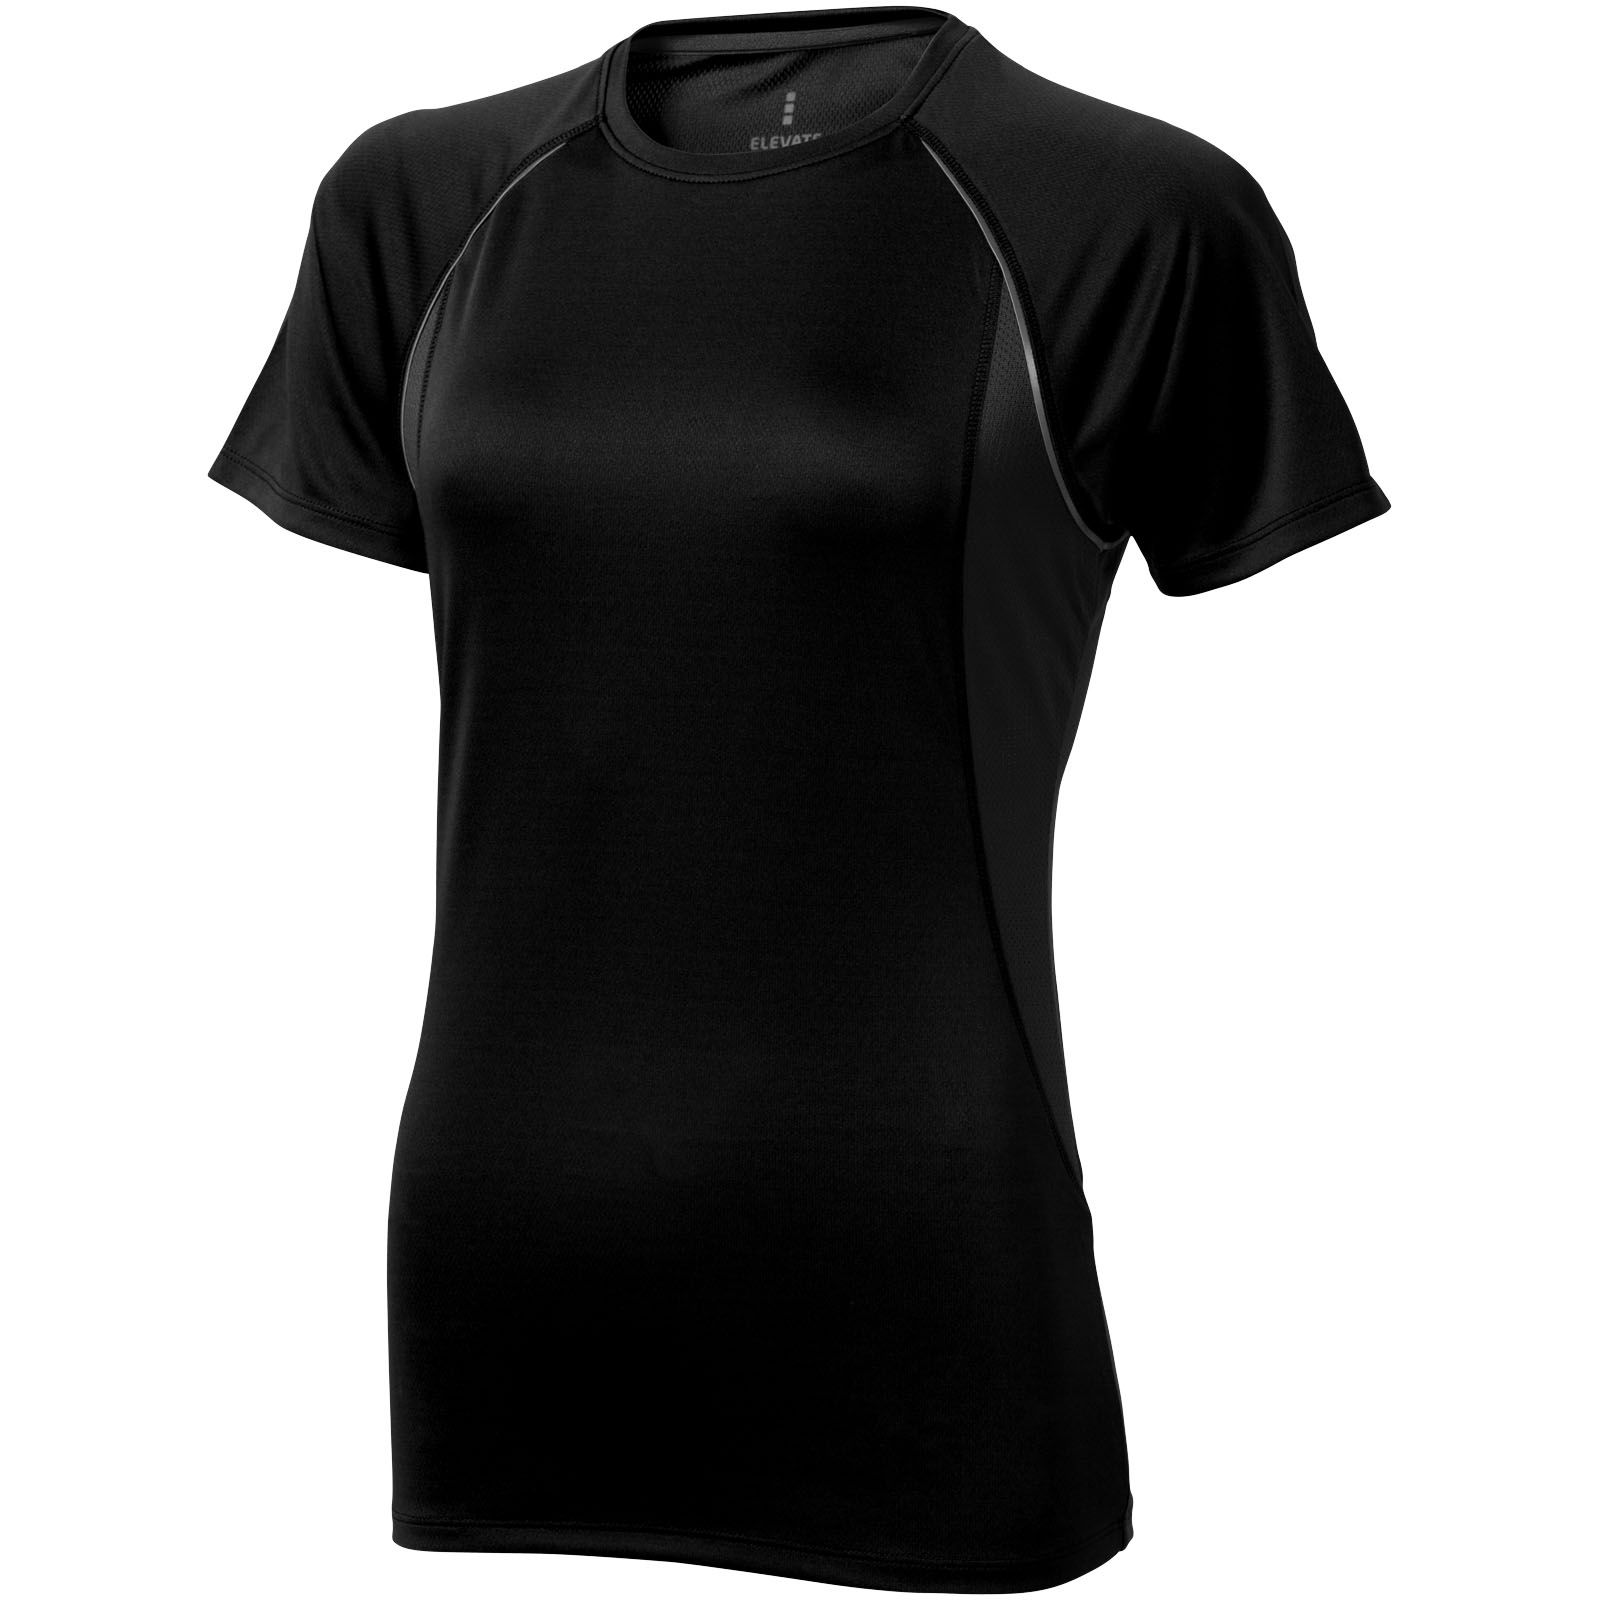 Quebec kortærmet cool fit t-shirt til kvinder